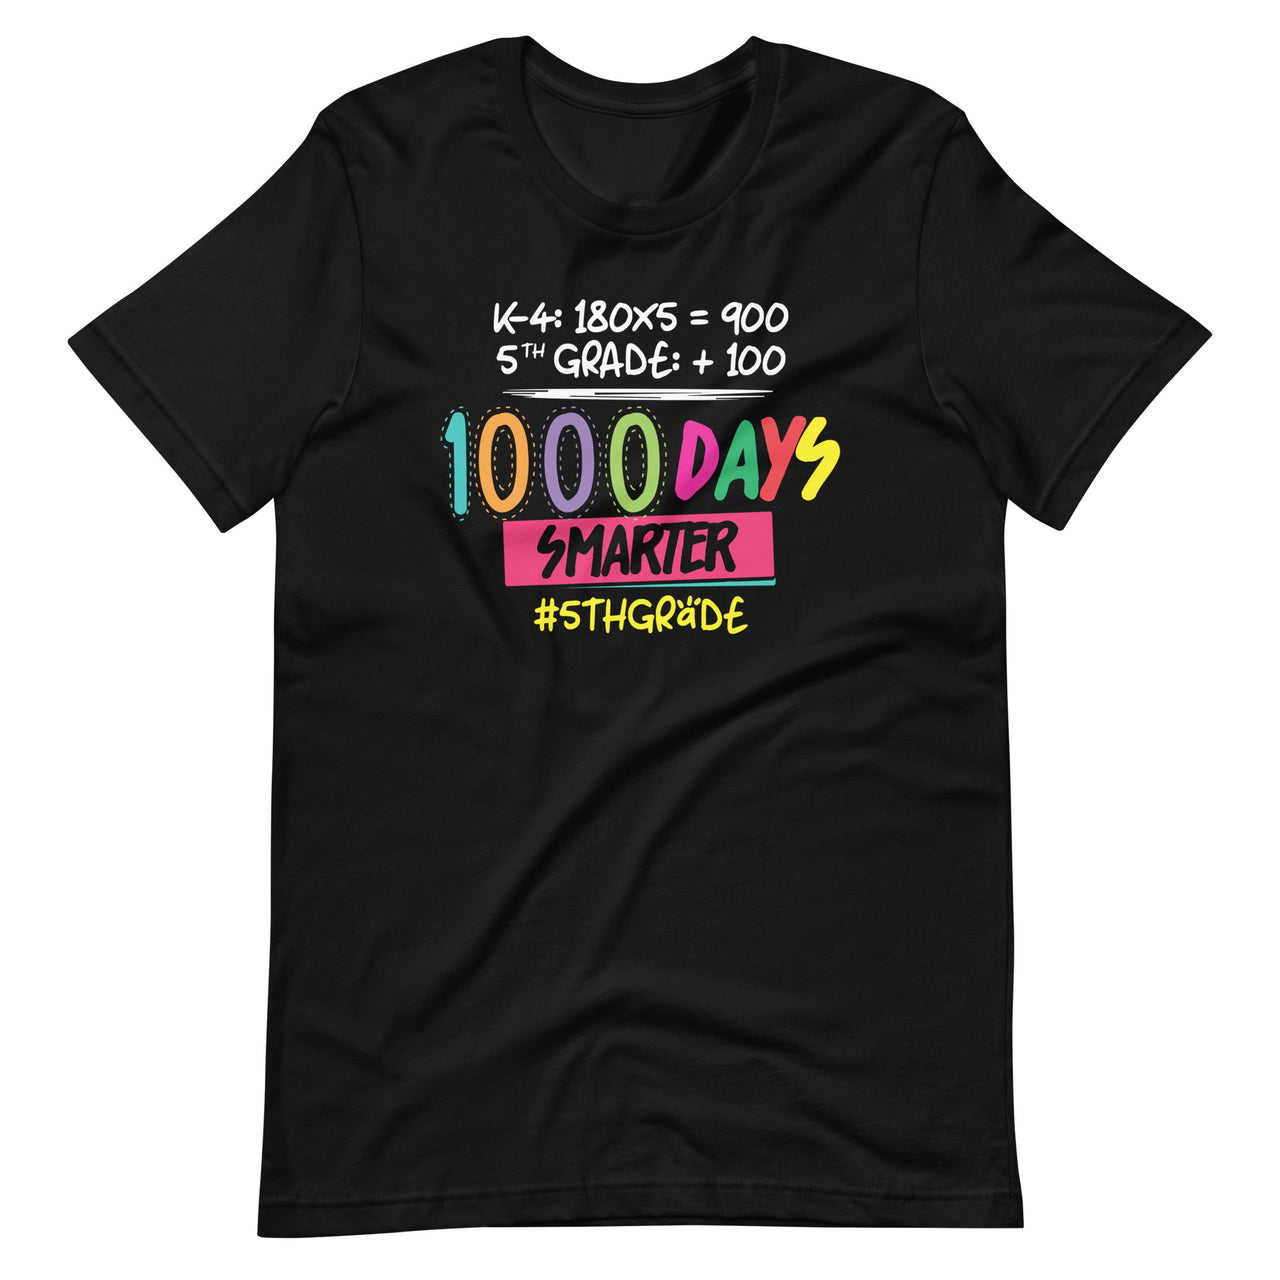 1000 Days Smarter - Fifth 5th Grade Teacher Student - School Unisex T-shirt